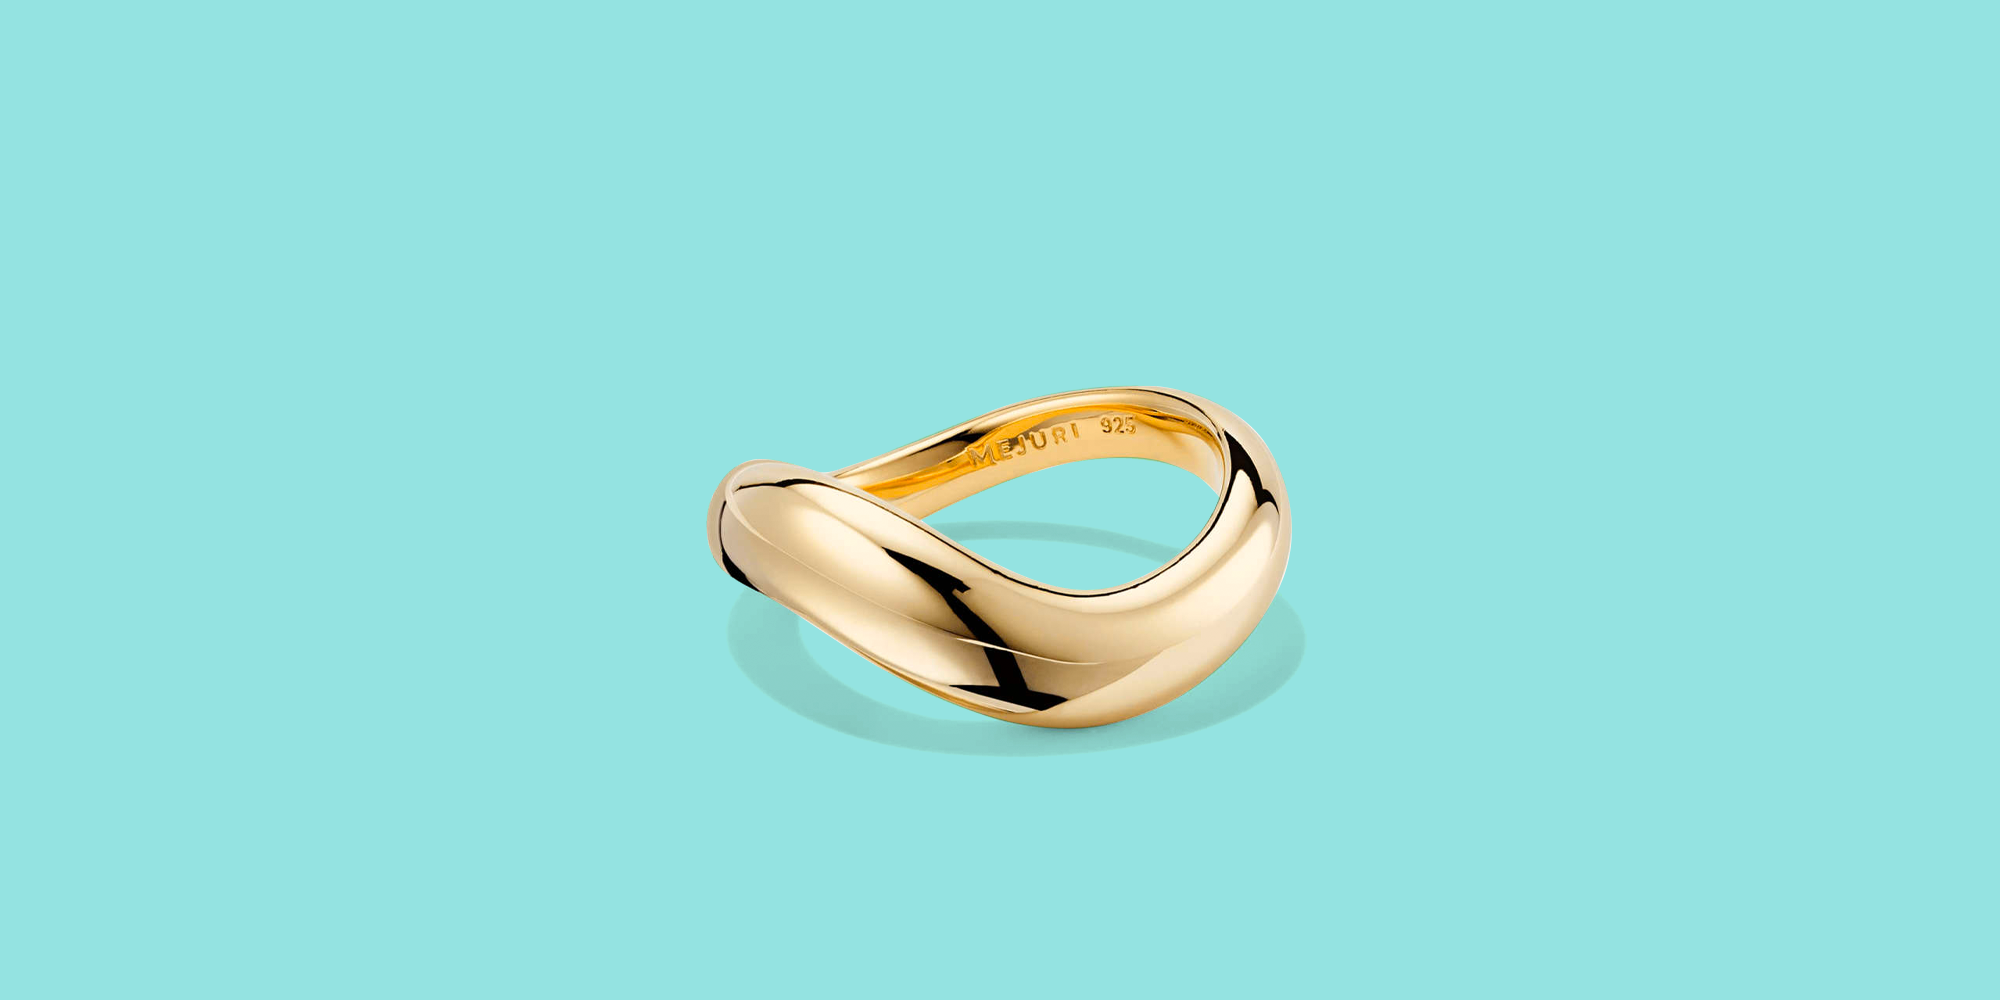 20,000+ Free Wedding Rings & Wedding Images - Pixabay